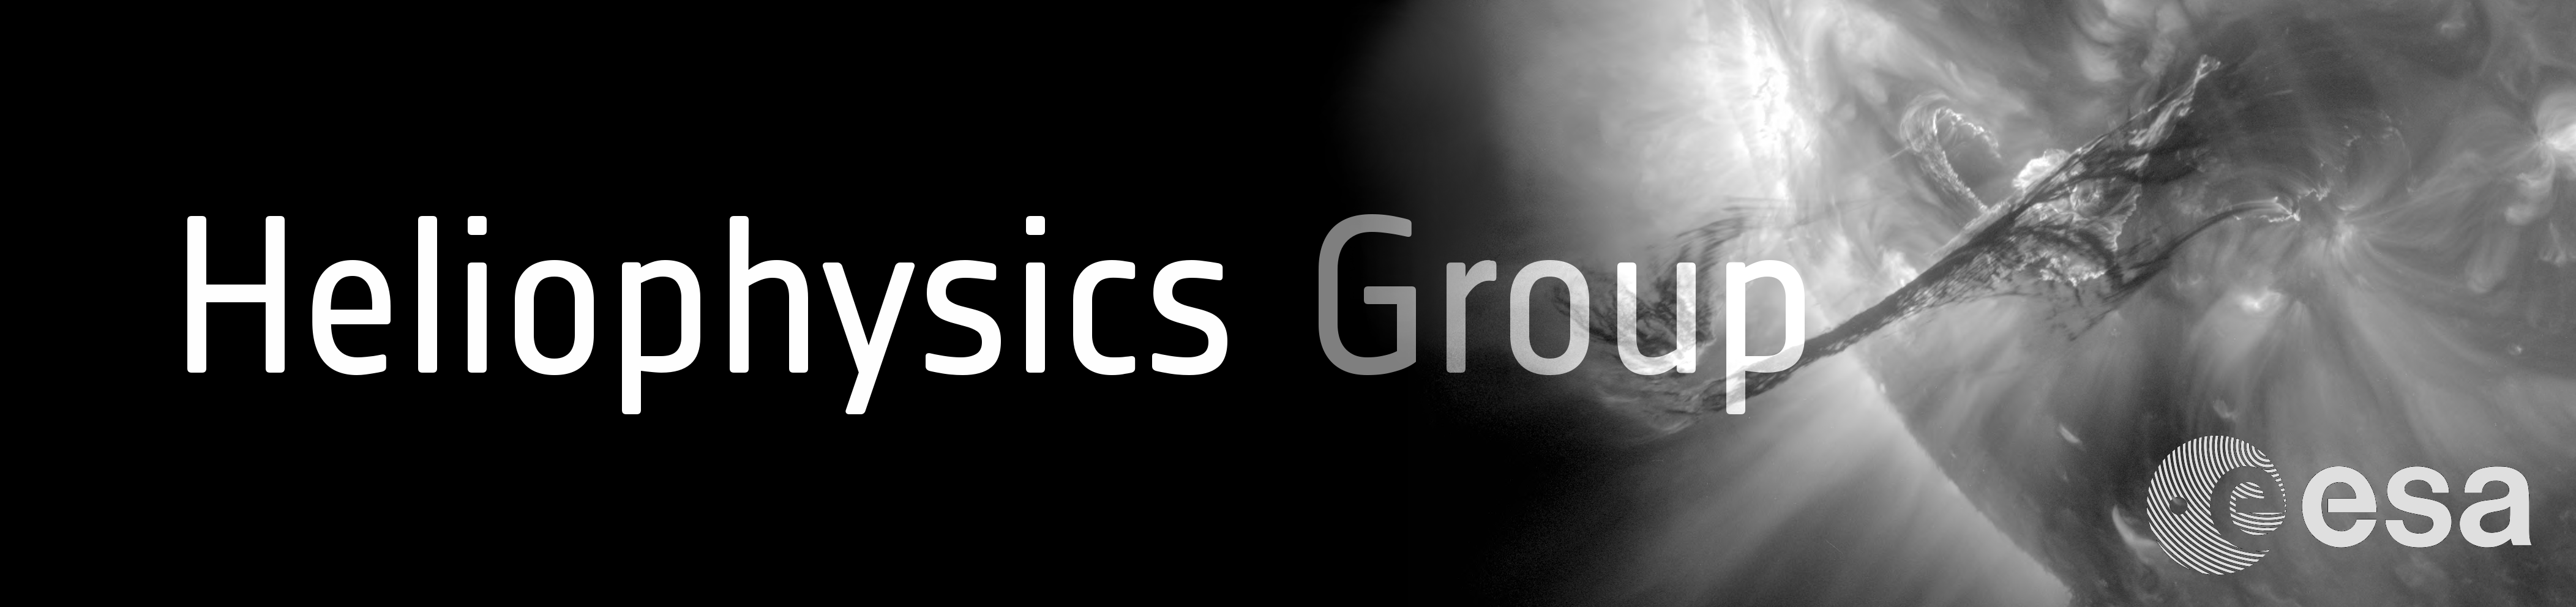 Heliophysics Group Banner